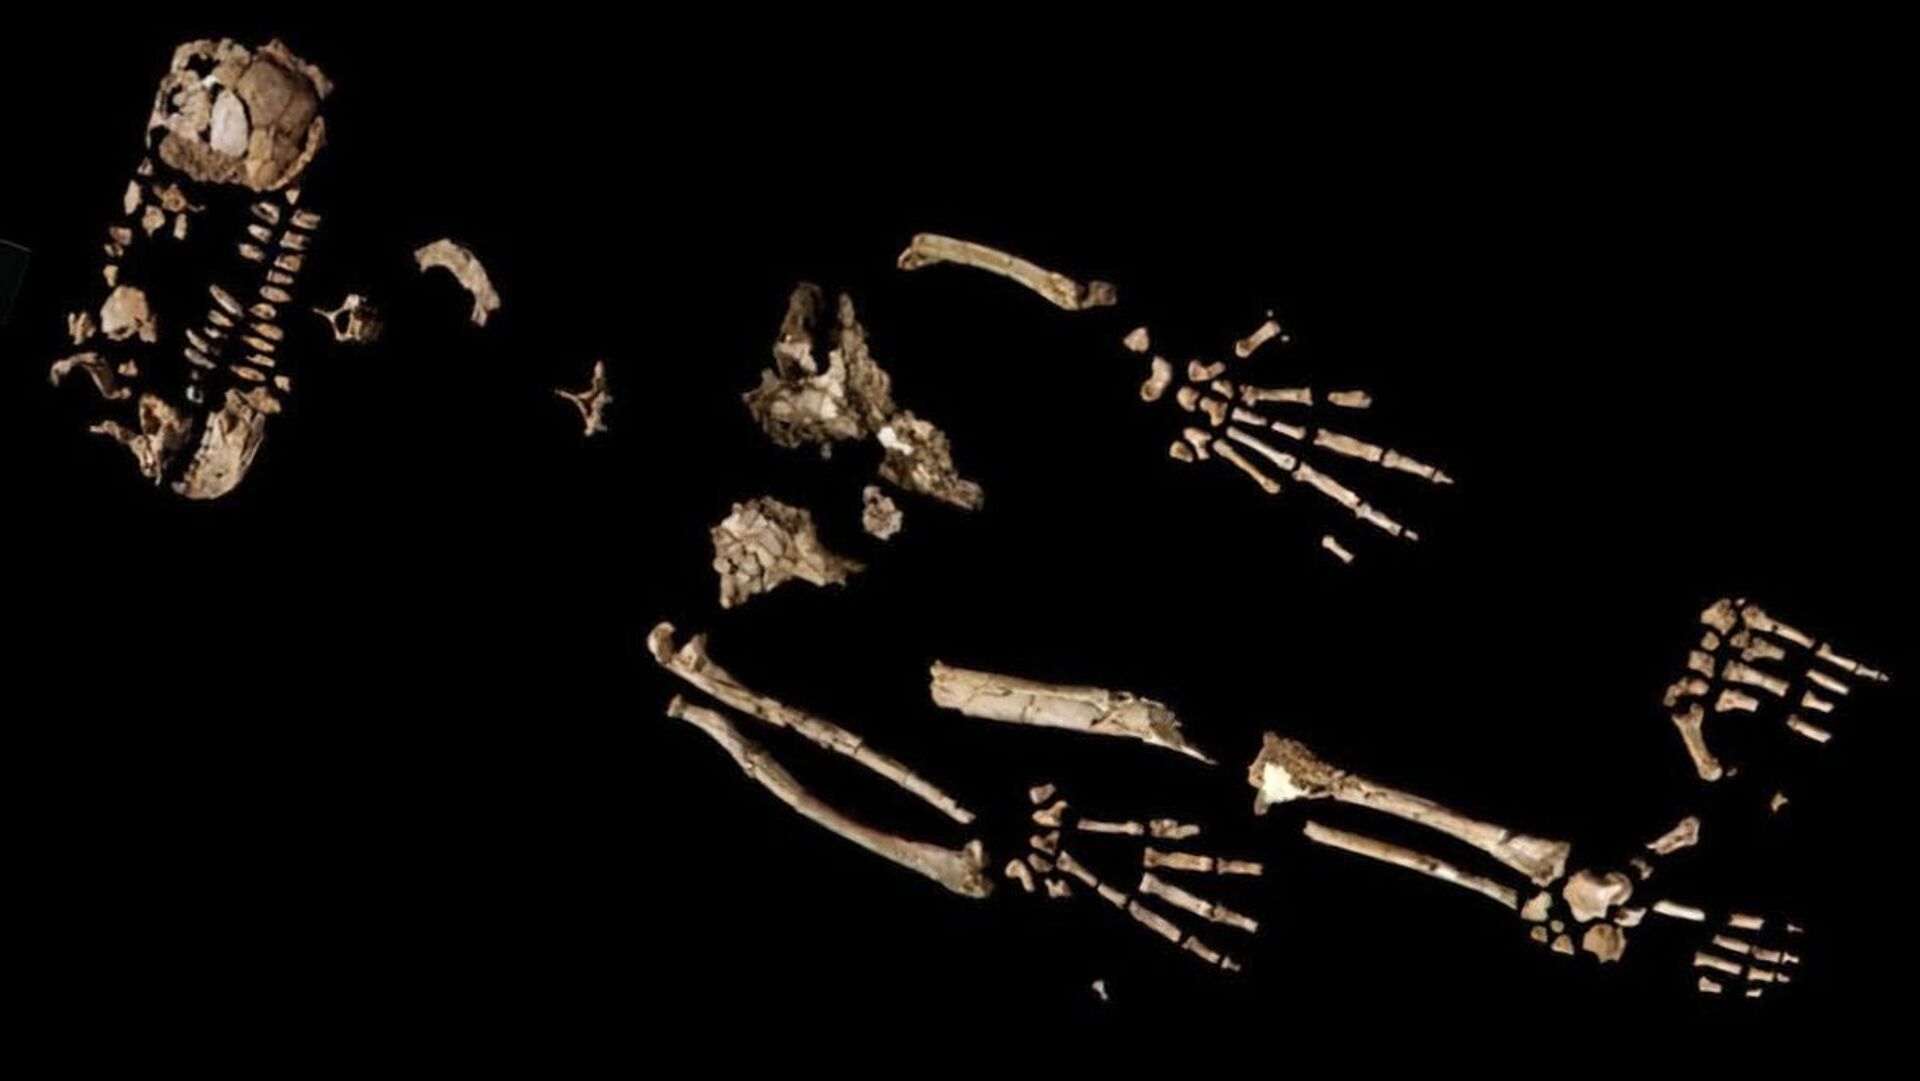 Mão de antepassado dos humanos revelaria 'grande salto evolutivo', diz estudo (FOTO) - Sputnik Brasil, 1920, 27.02.2021